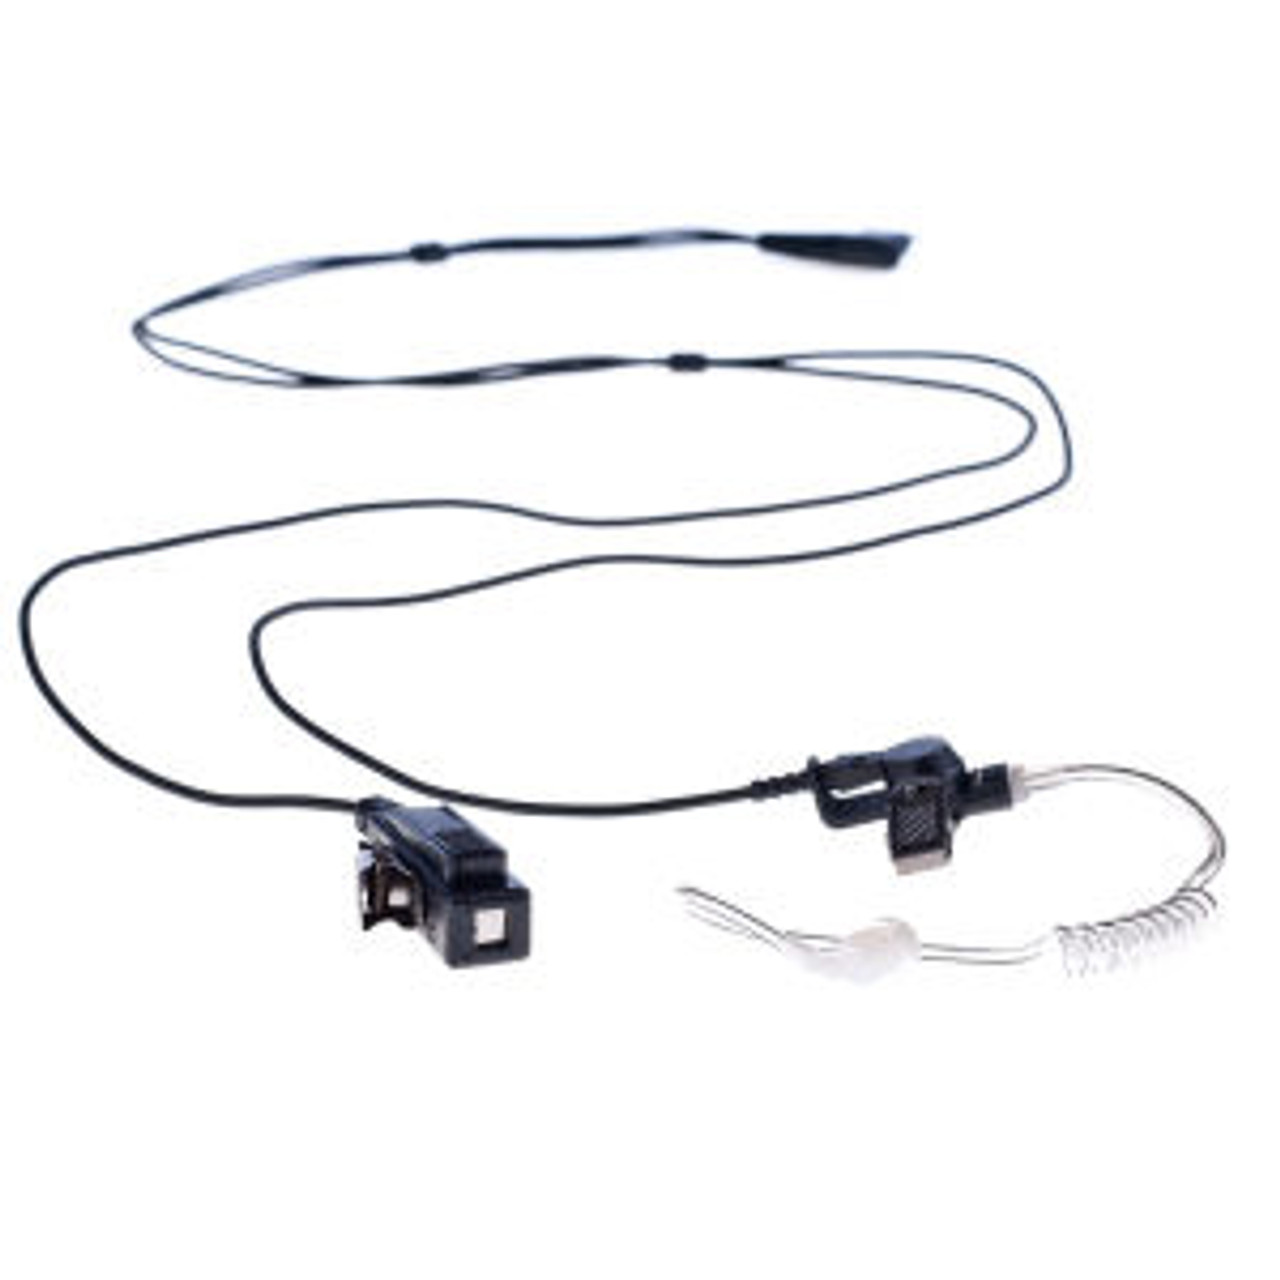 Maxon SL55 2-Wire Surveillance Kit